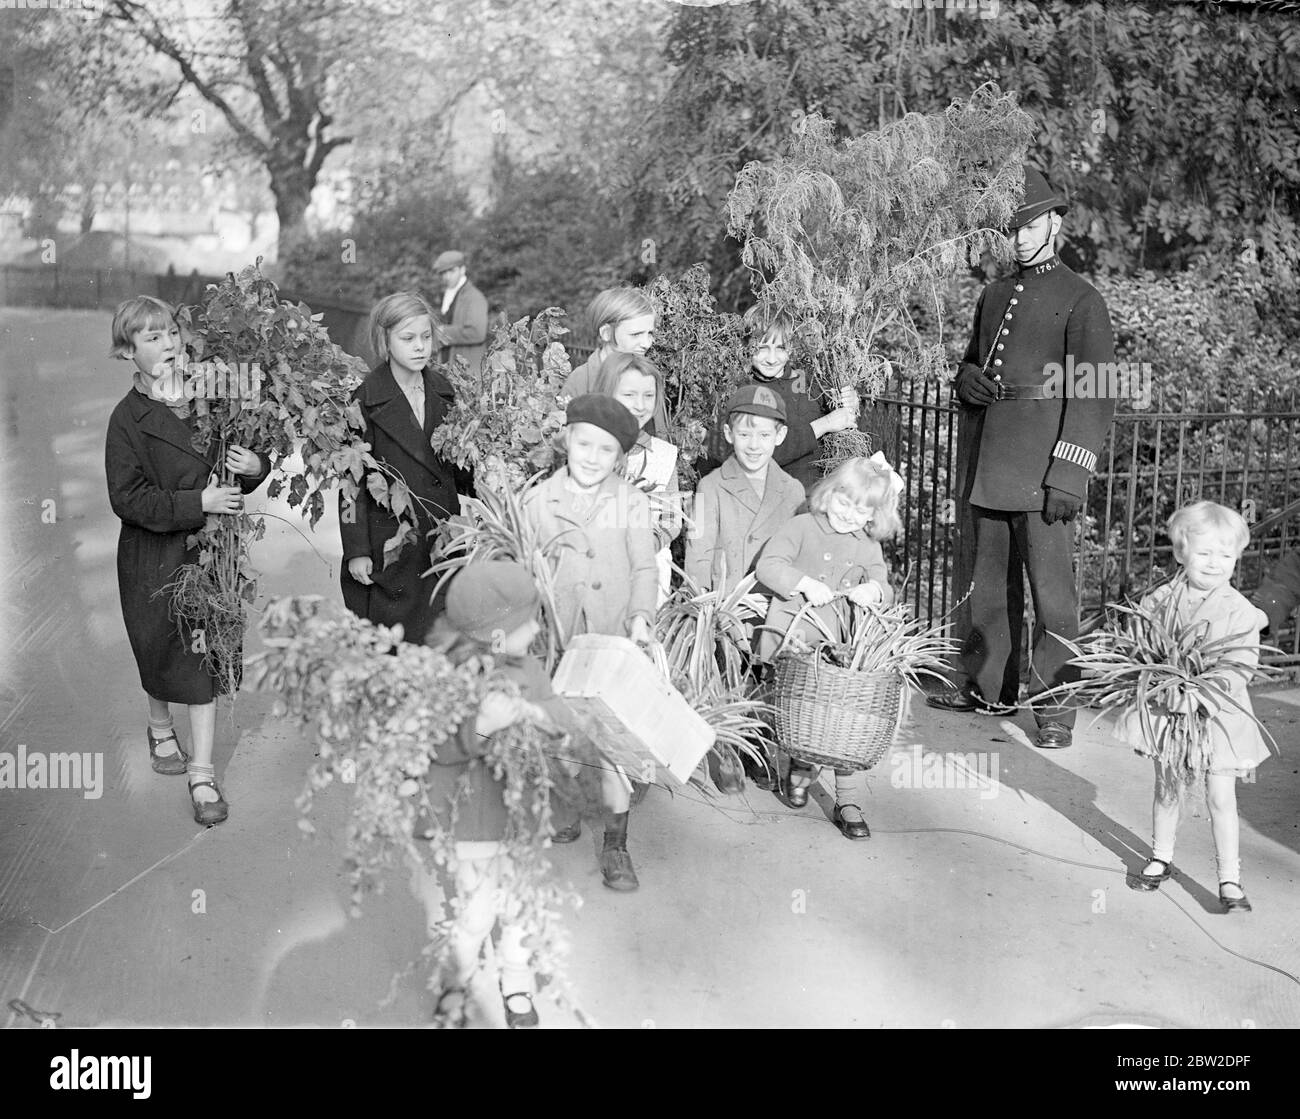 Il y a eu une ruée d'enfants au London County Councils Park pour la distribution annuelle des usines excédentaires. Spectacles photo : les enfants rentrent avec les trophées de Kennington Park. 15 octobre 1938 Banque D'Images